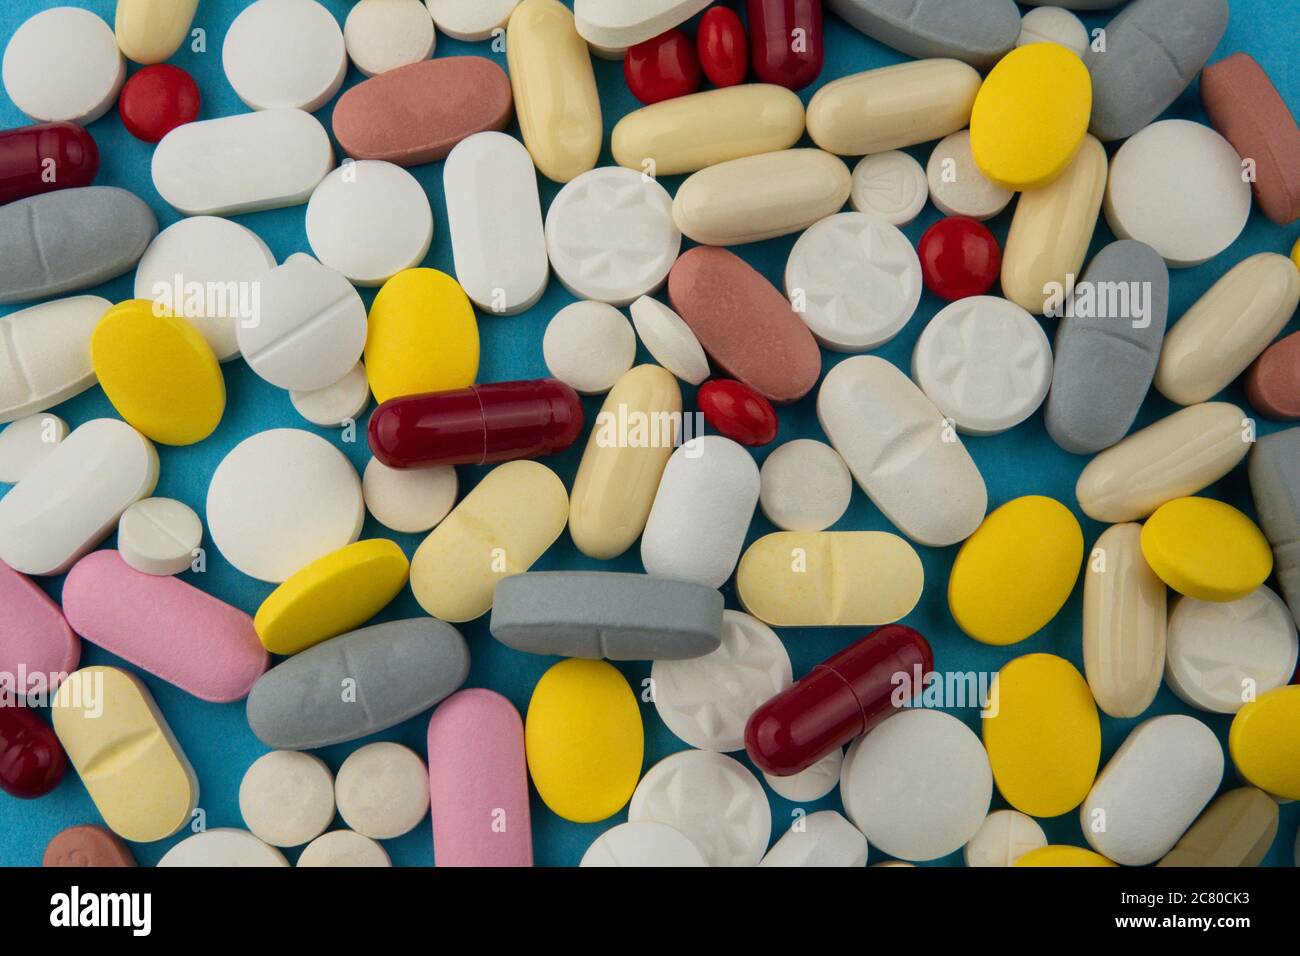 Assortiment de pilules pharmaceutiques isolées avec le backgorund bleu. Photo de concept sur le thème coronavirus et Covid-19. Banque D'Images